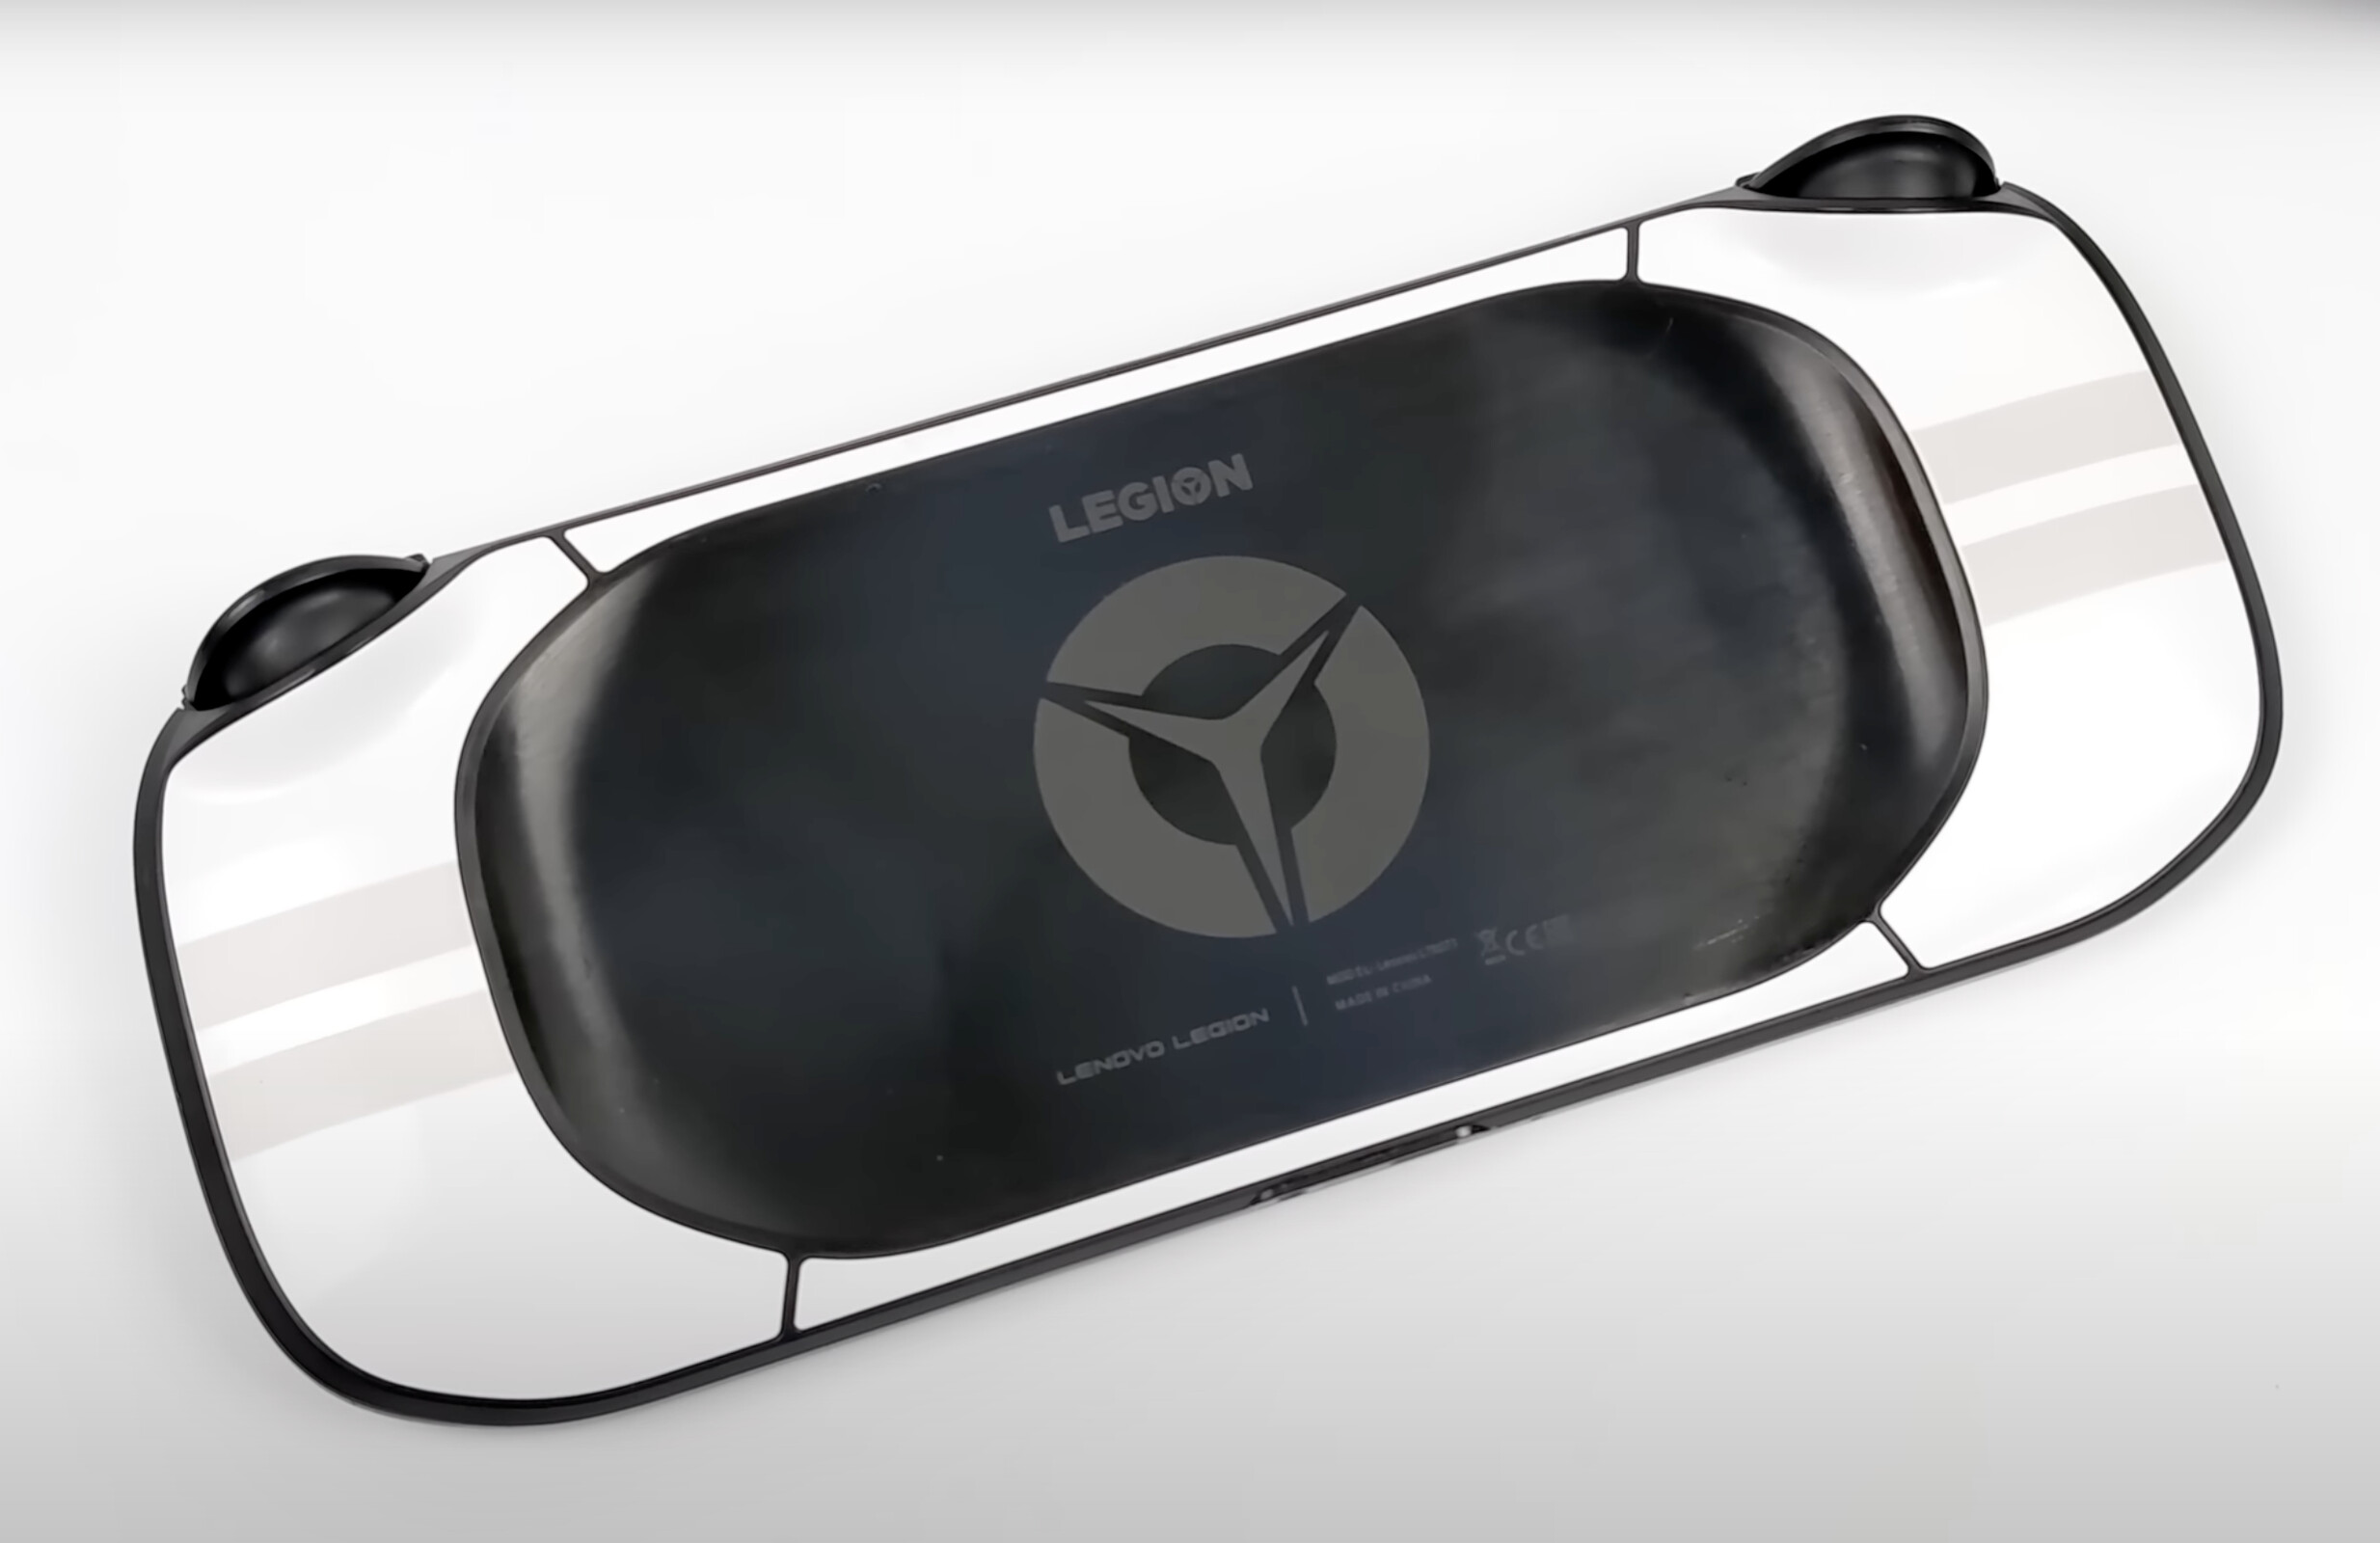 Lenovo Legion Go: Se rumorea que el nuevo dispositivo portátil